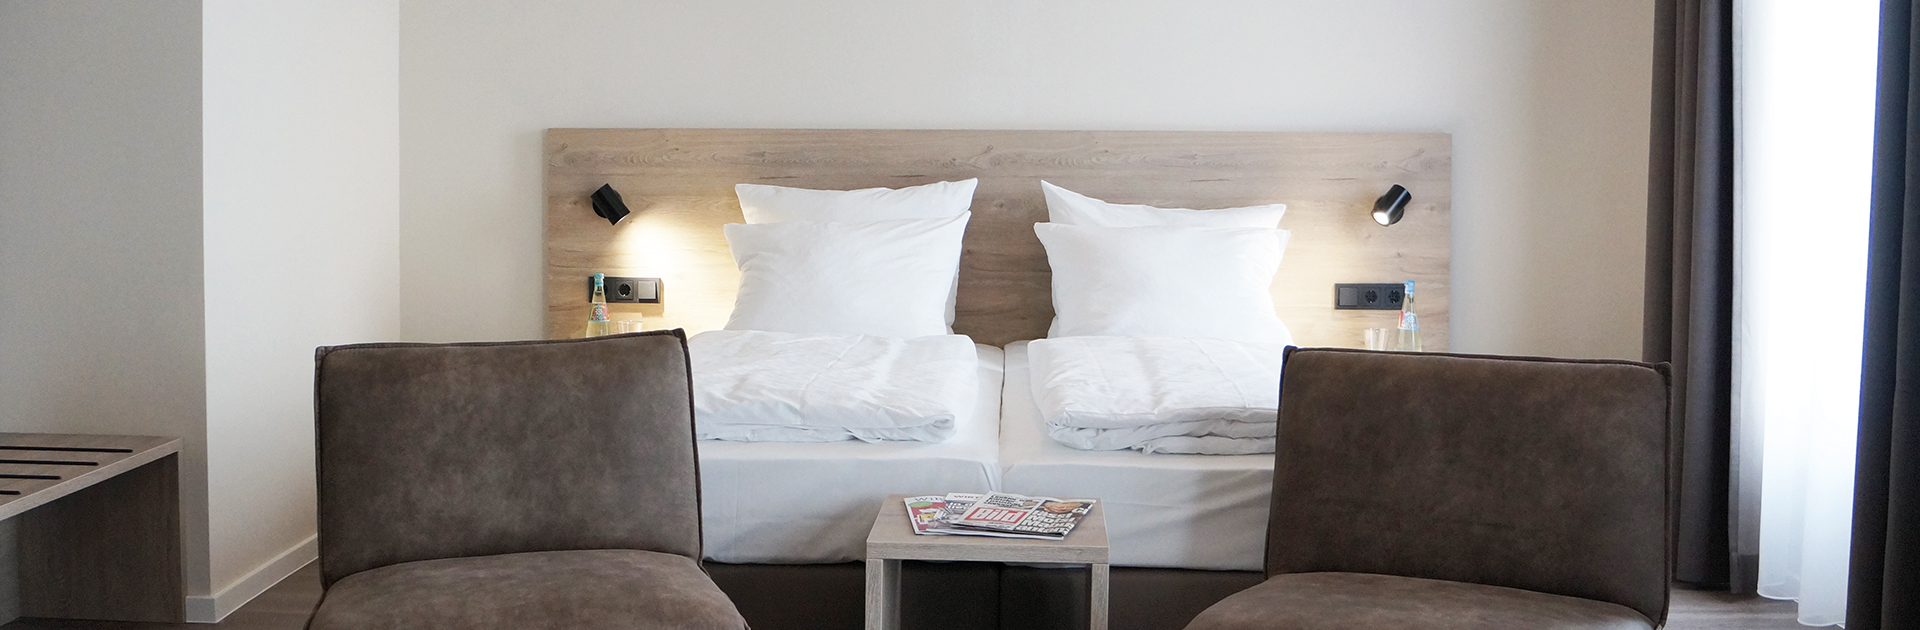 Hotelzimmer mit Bett und Sitzecke